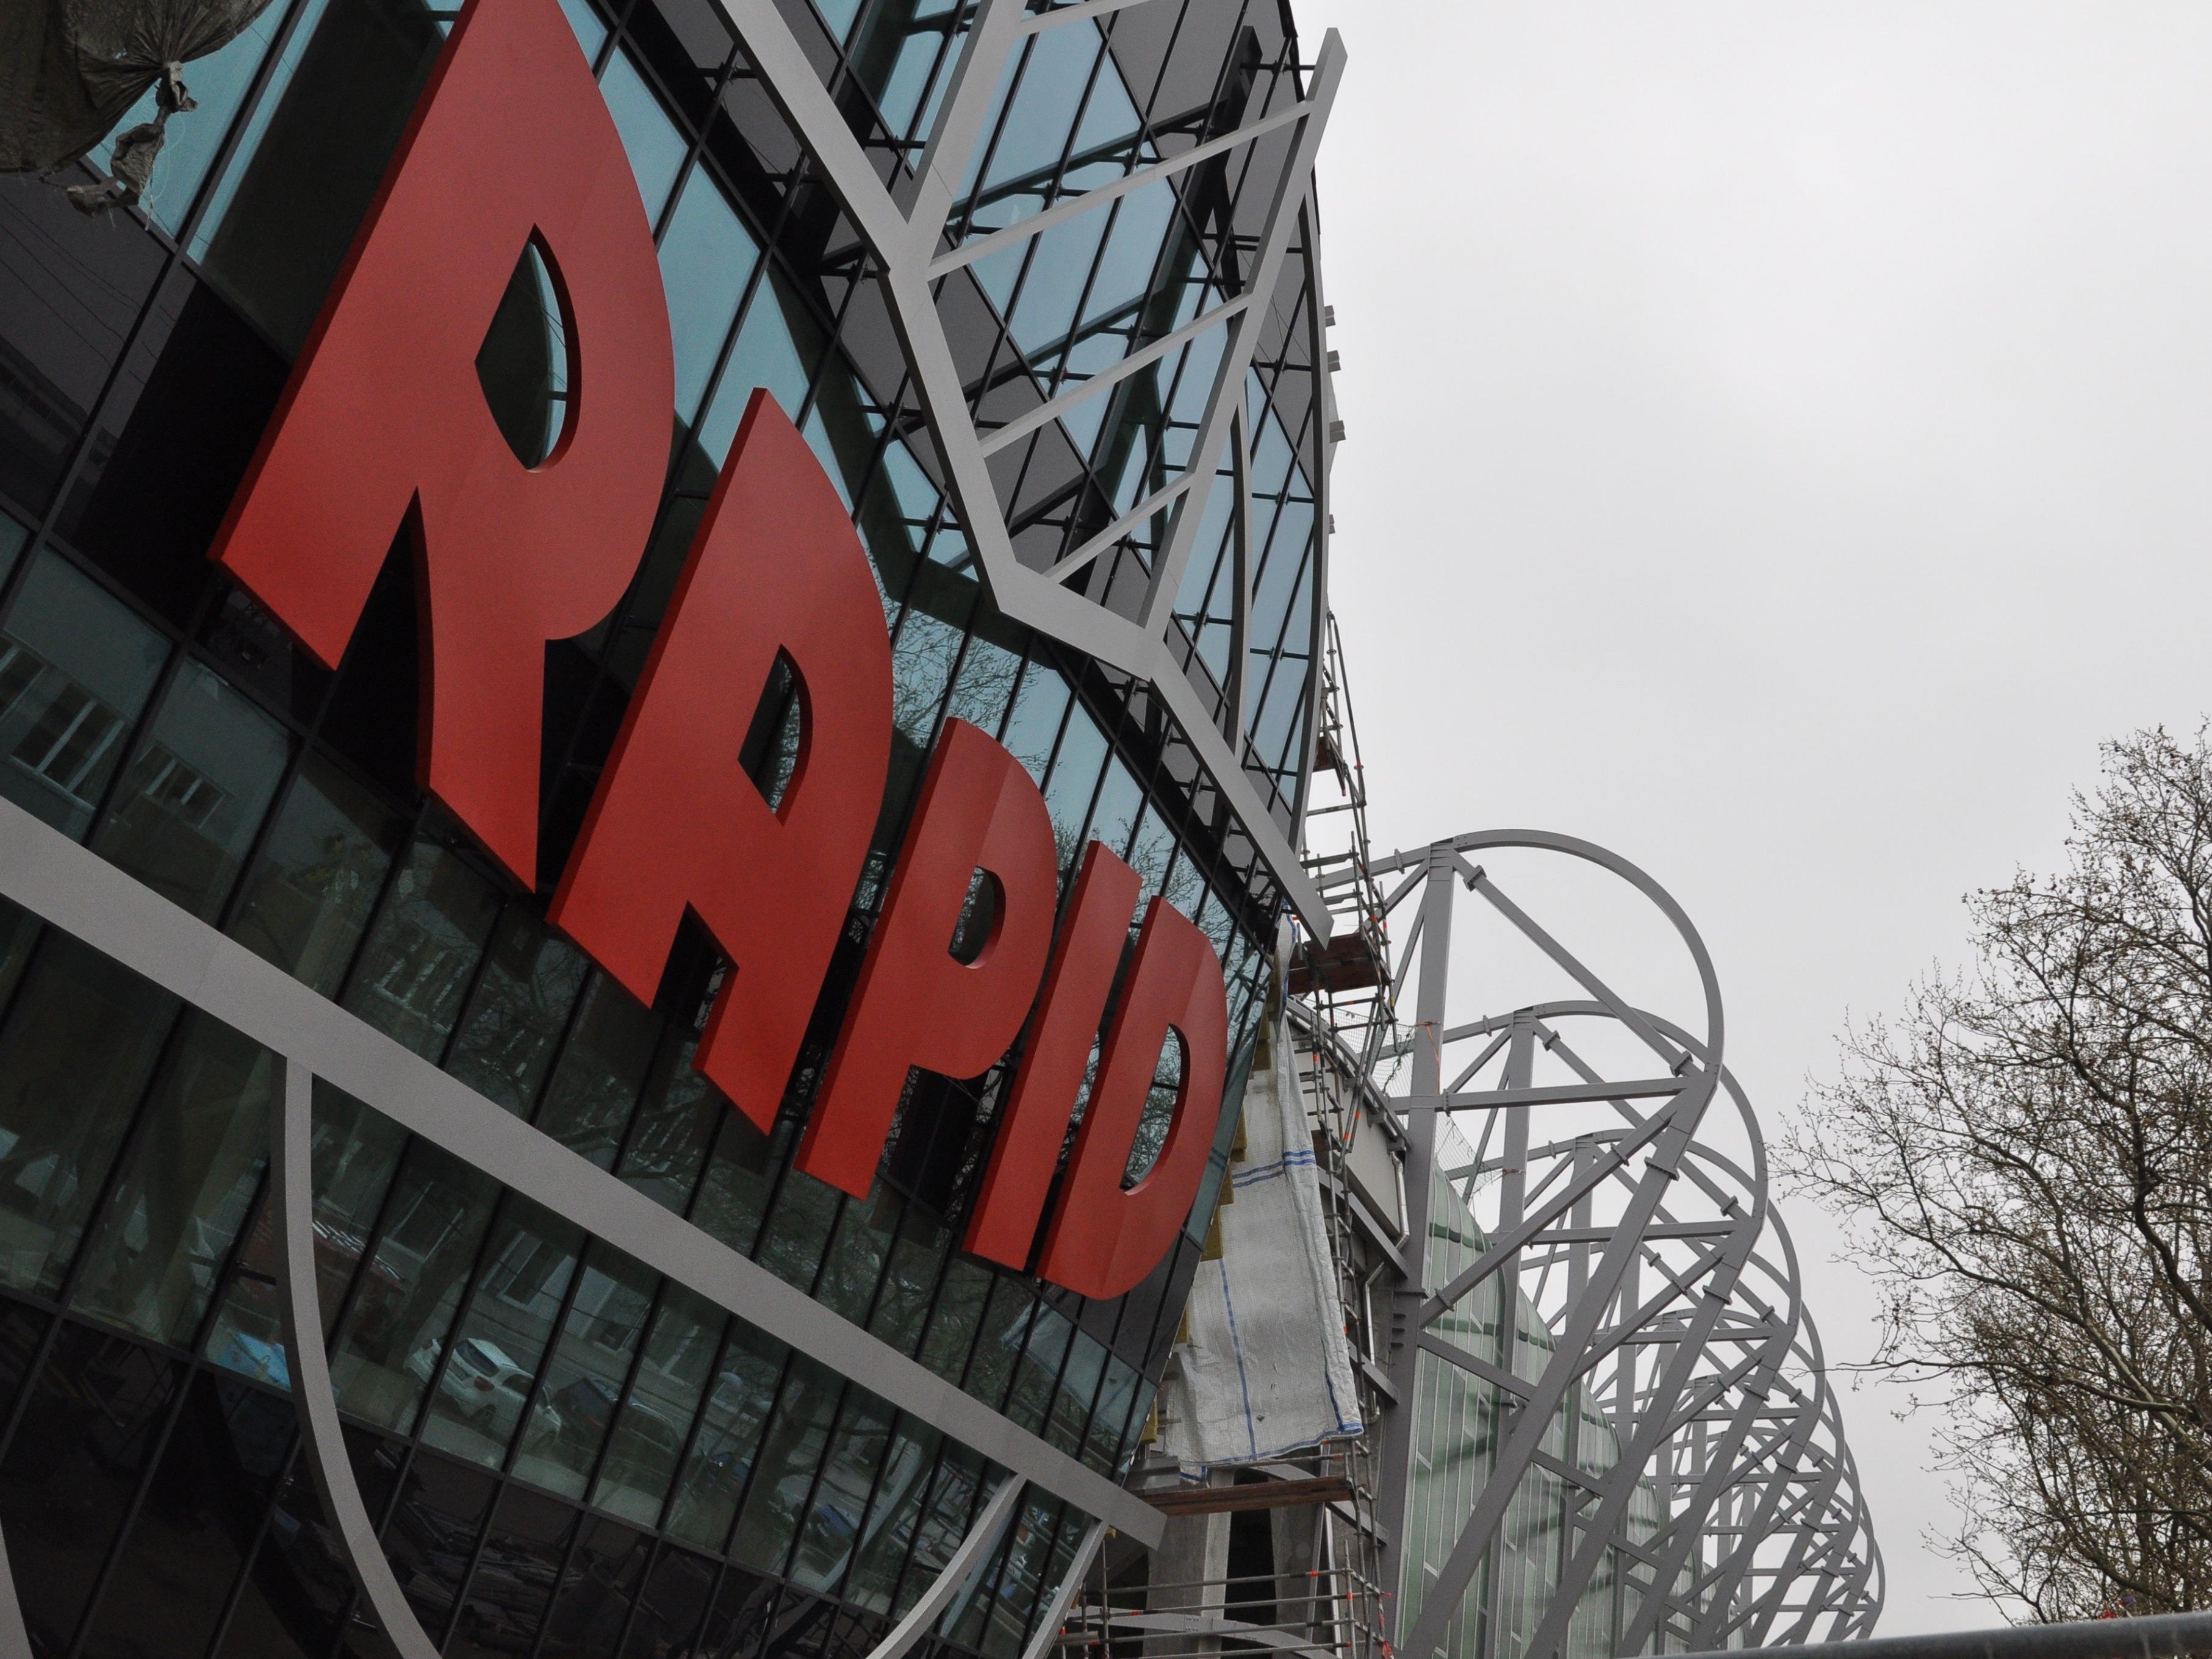 Am 30. Juni soll das Allianz Stadion offiziell an den SK Rapid übergeben werden.